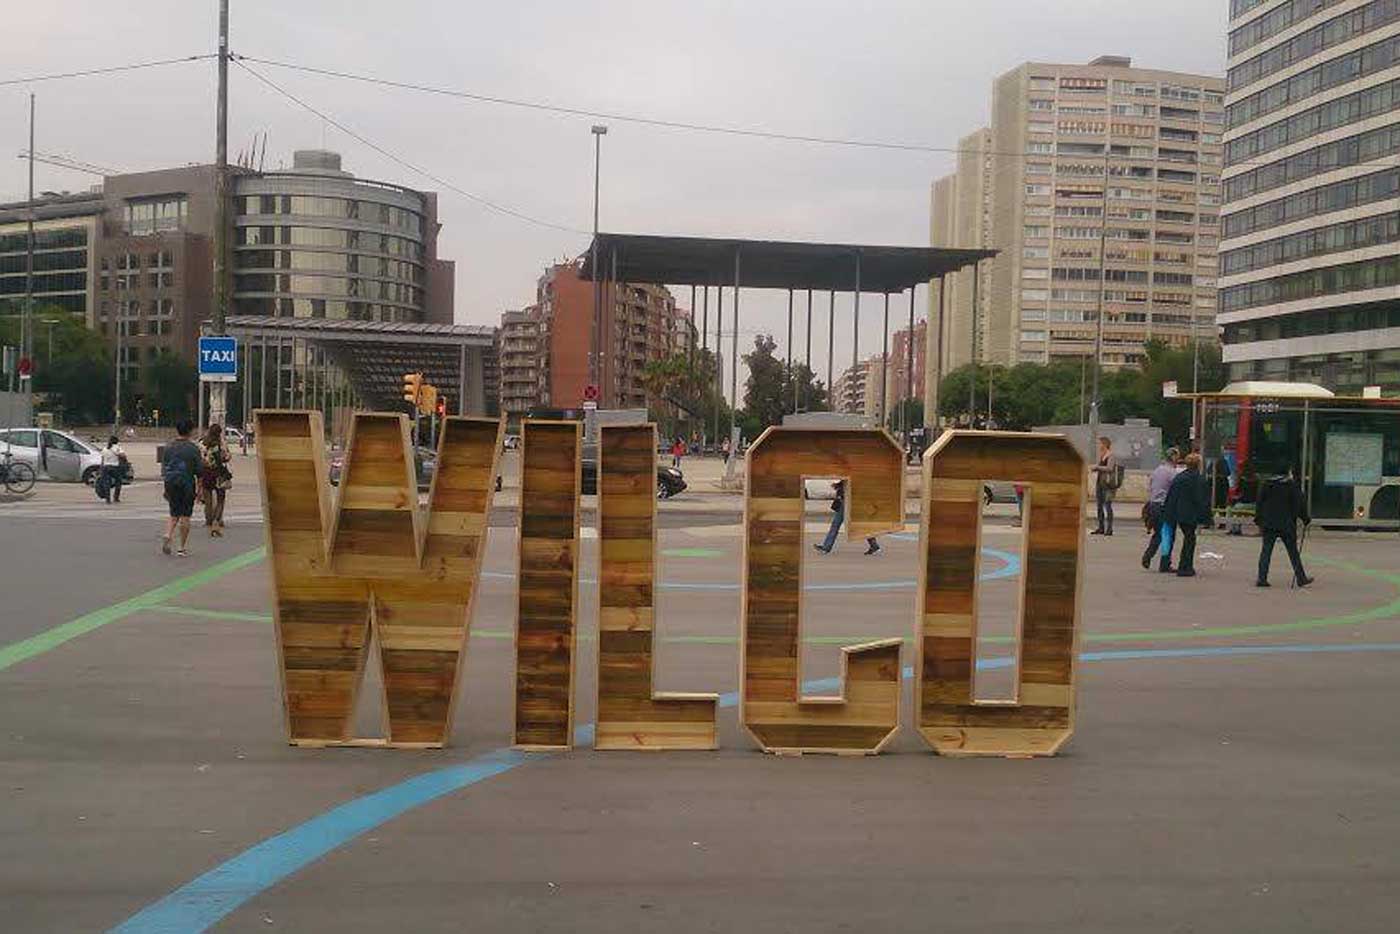 Aparecen en Barcelona unas letras gigantes de Wilco